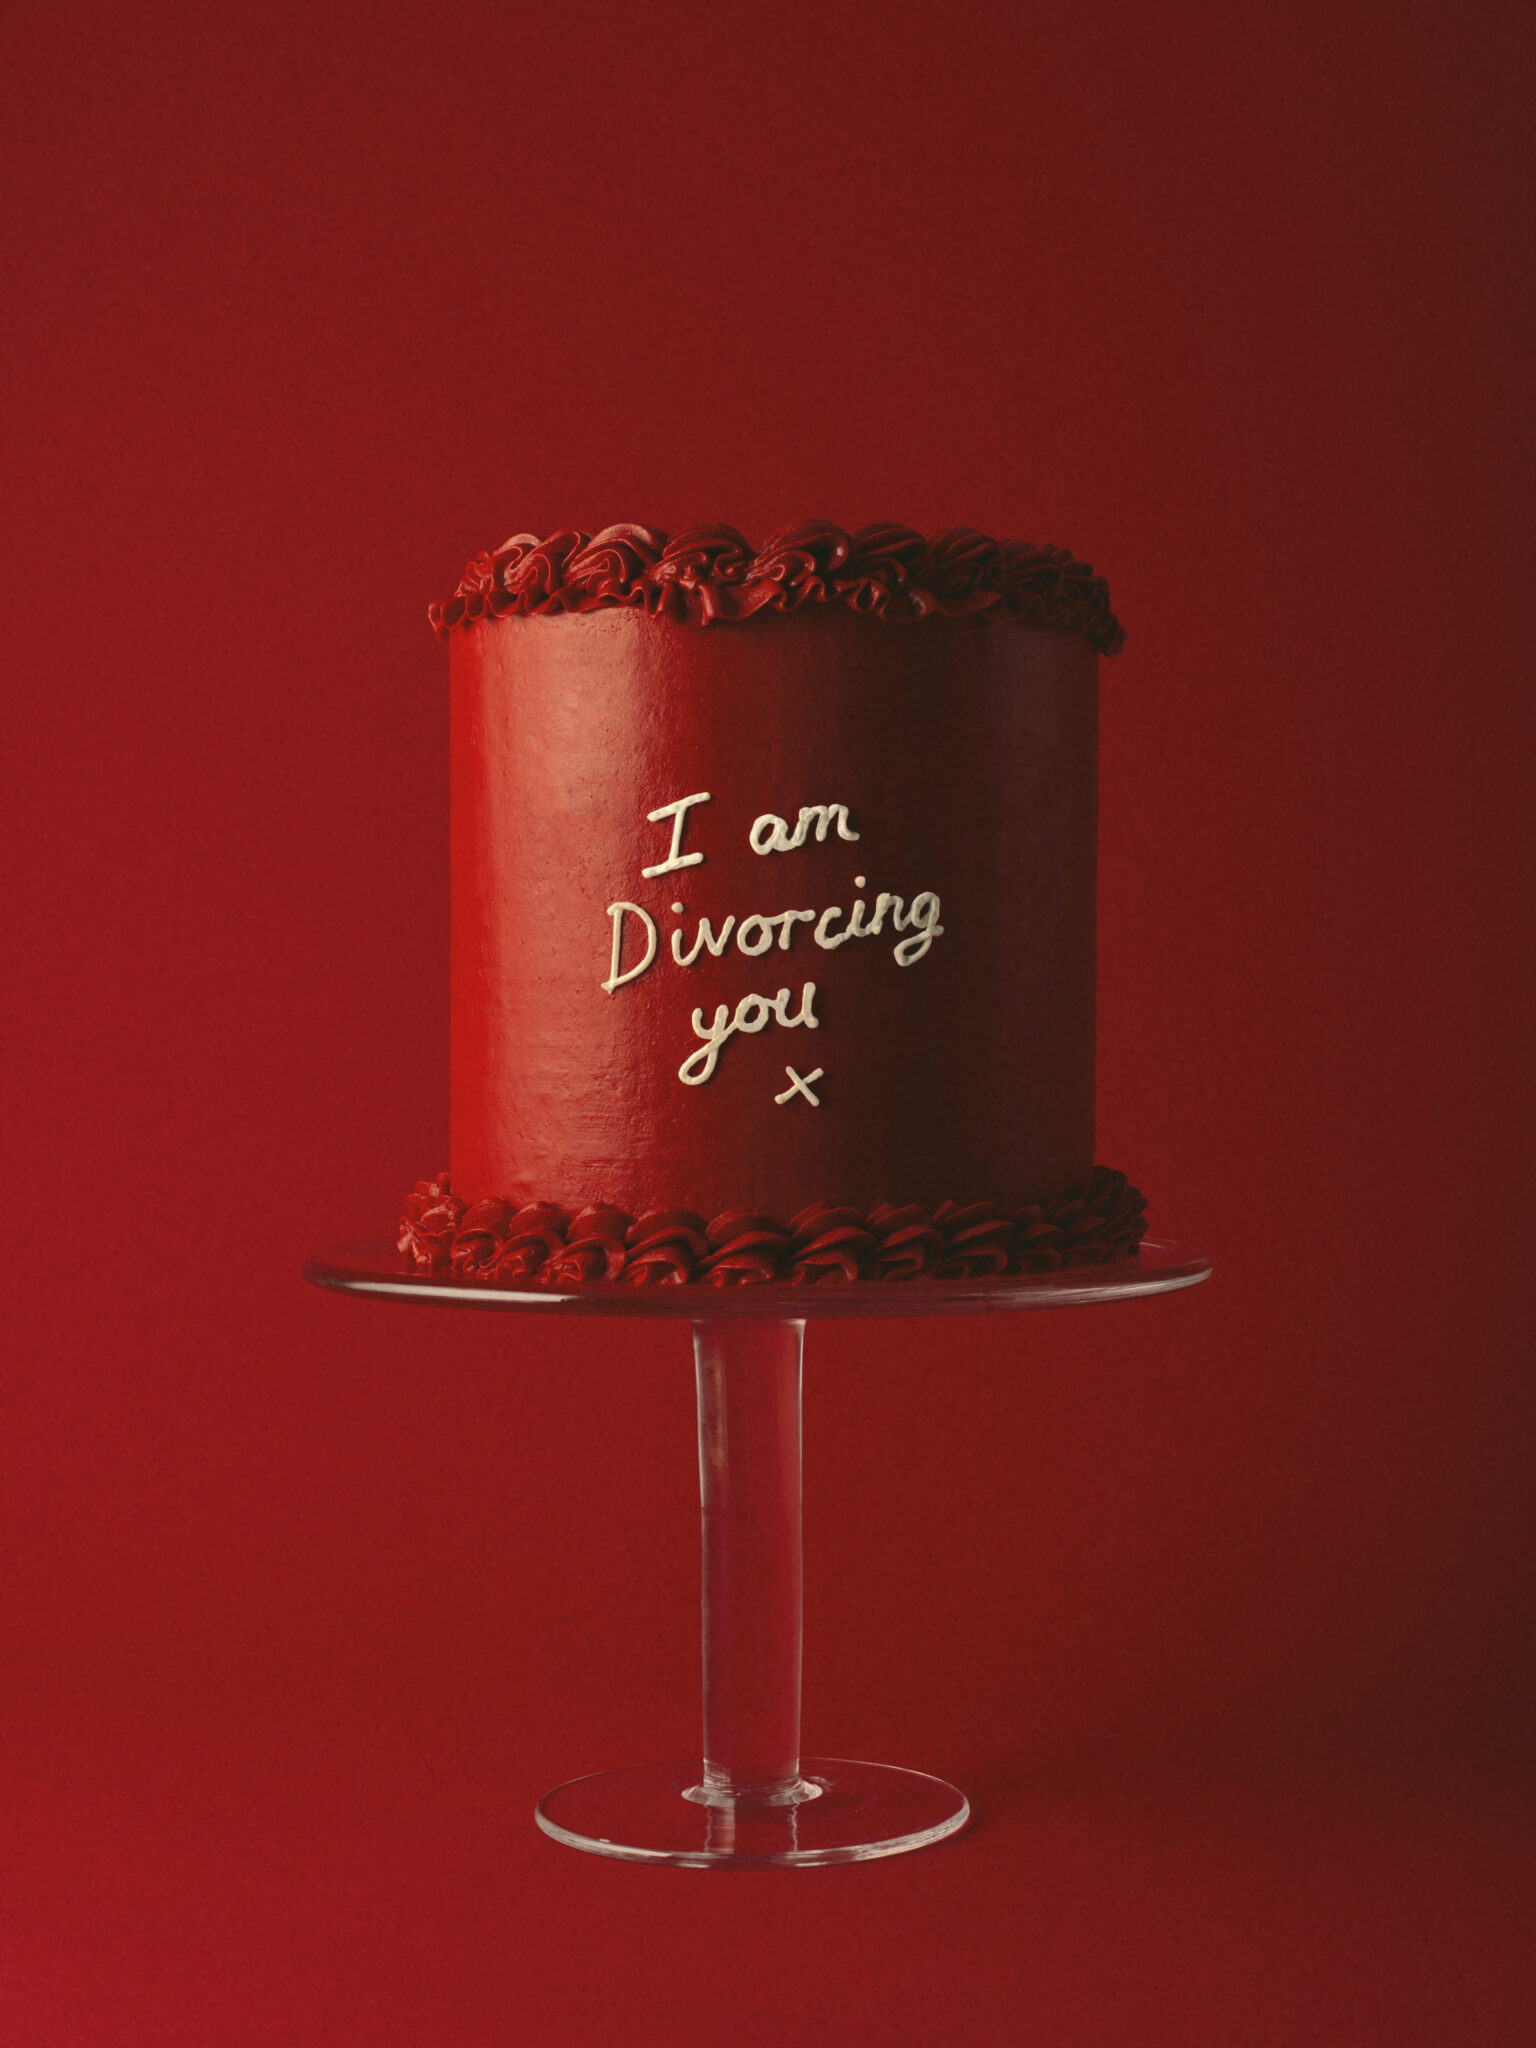 Visuel de la nouvelle campagne Byredo avec le chef Dead Hungry montrant un gâteau avec la mention " i am divorcing you"